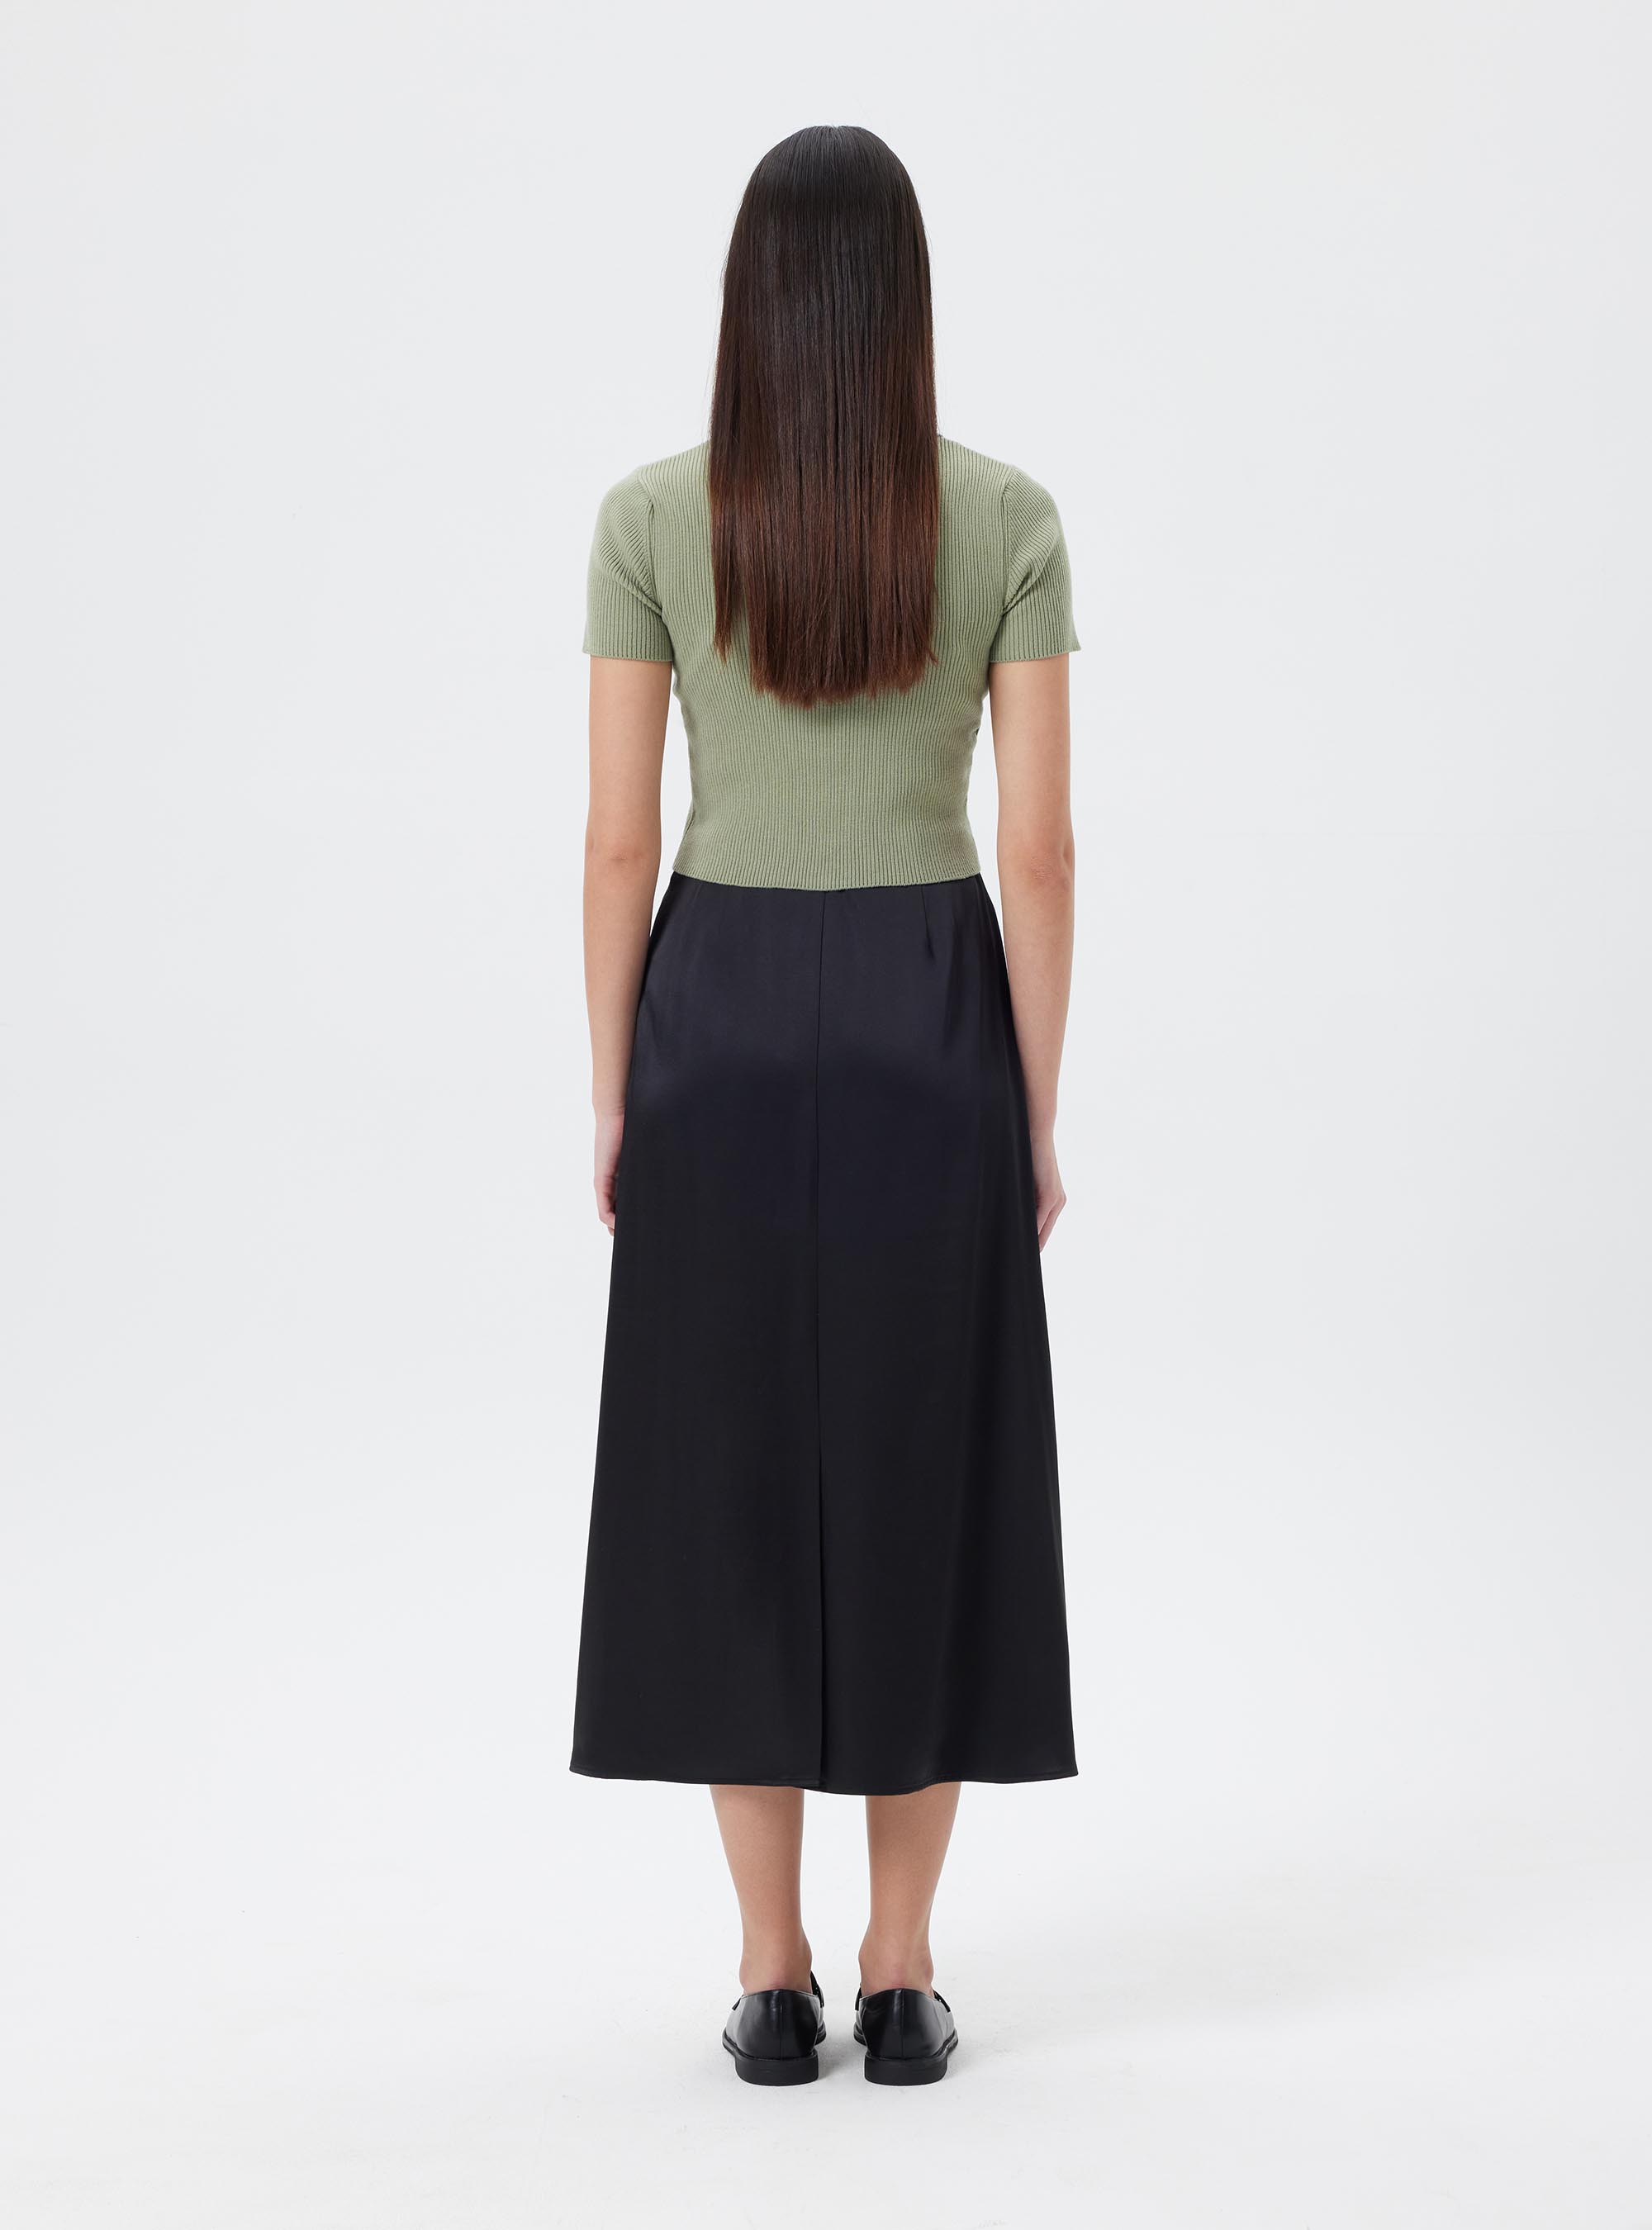 오필리아 펜슬 스커트  Ophelia pencil skirt (1color)